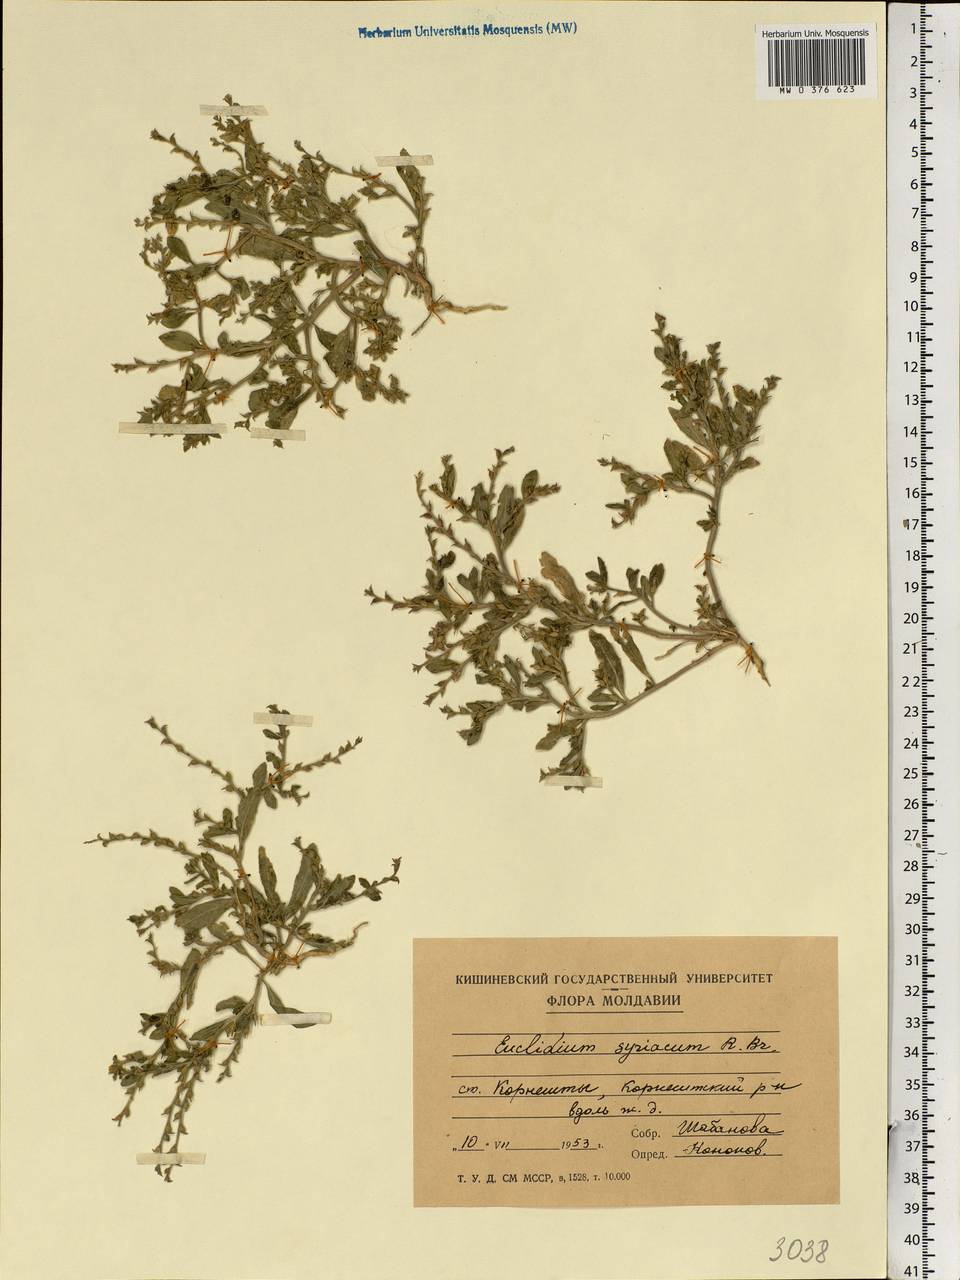 Euclidium syriacum (L.) W.T. Aiton, Eastern Europe, Moldova (E13a) (Moldova)